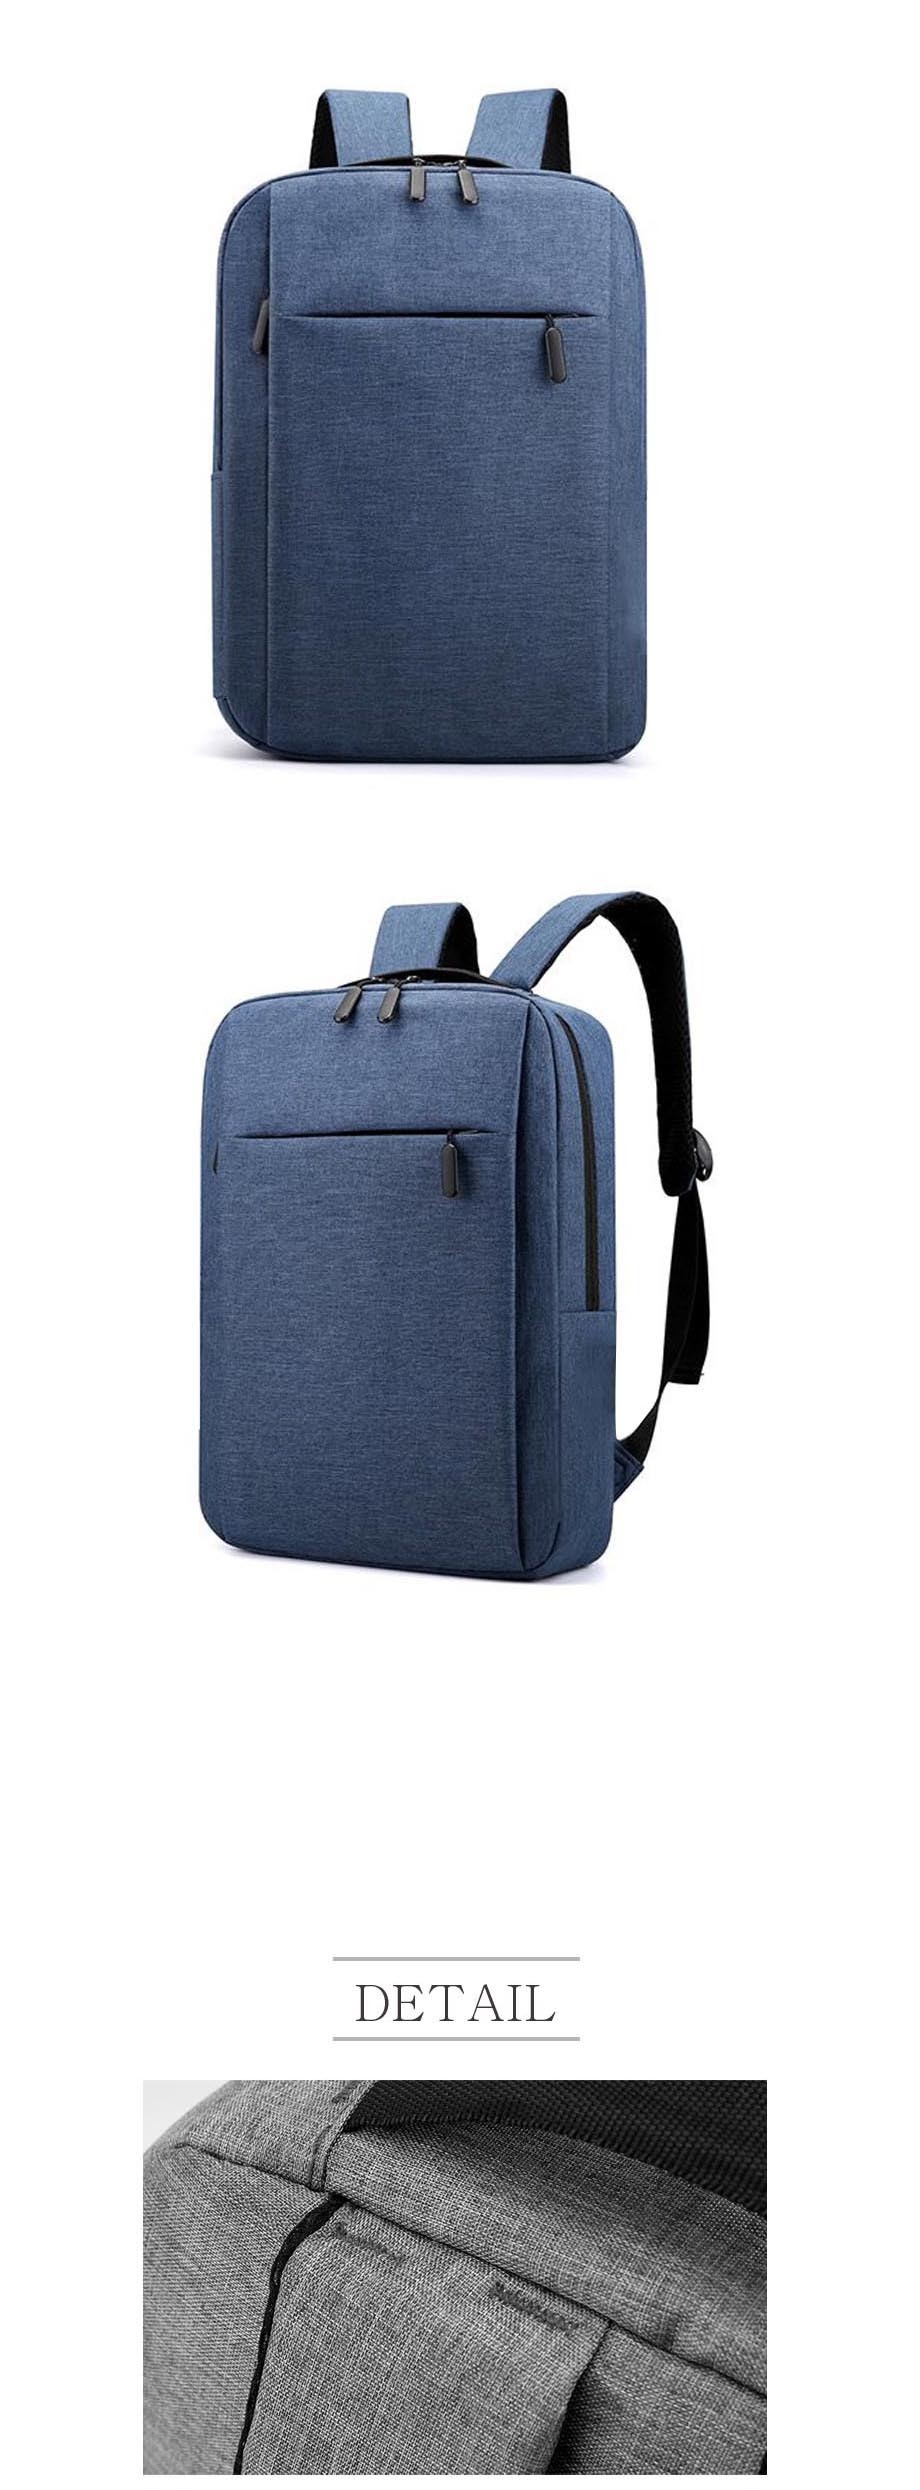 LD-955-simple-line-bagpack-06.jpg